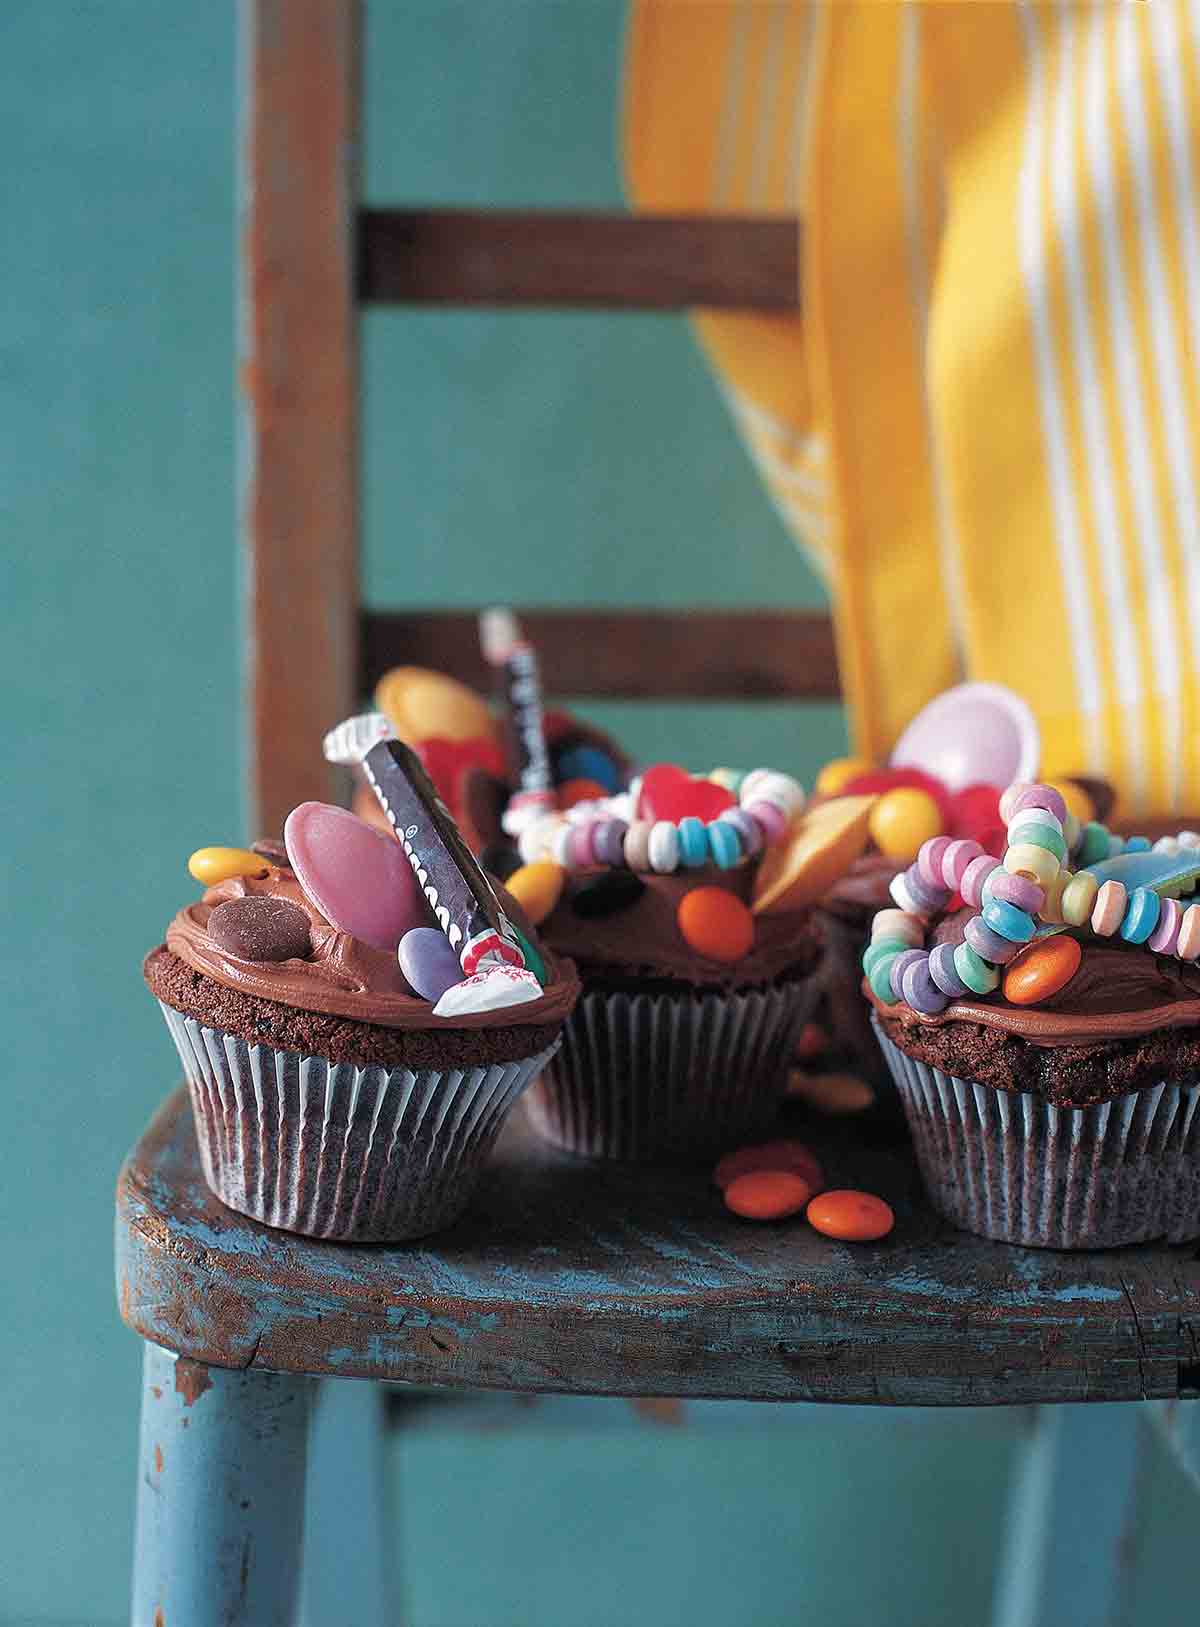 العديد من كب كيك الشوكولاتة مع صقيع الشوكولاتة والحلوى في الأعلى على كرسي خشبي.